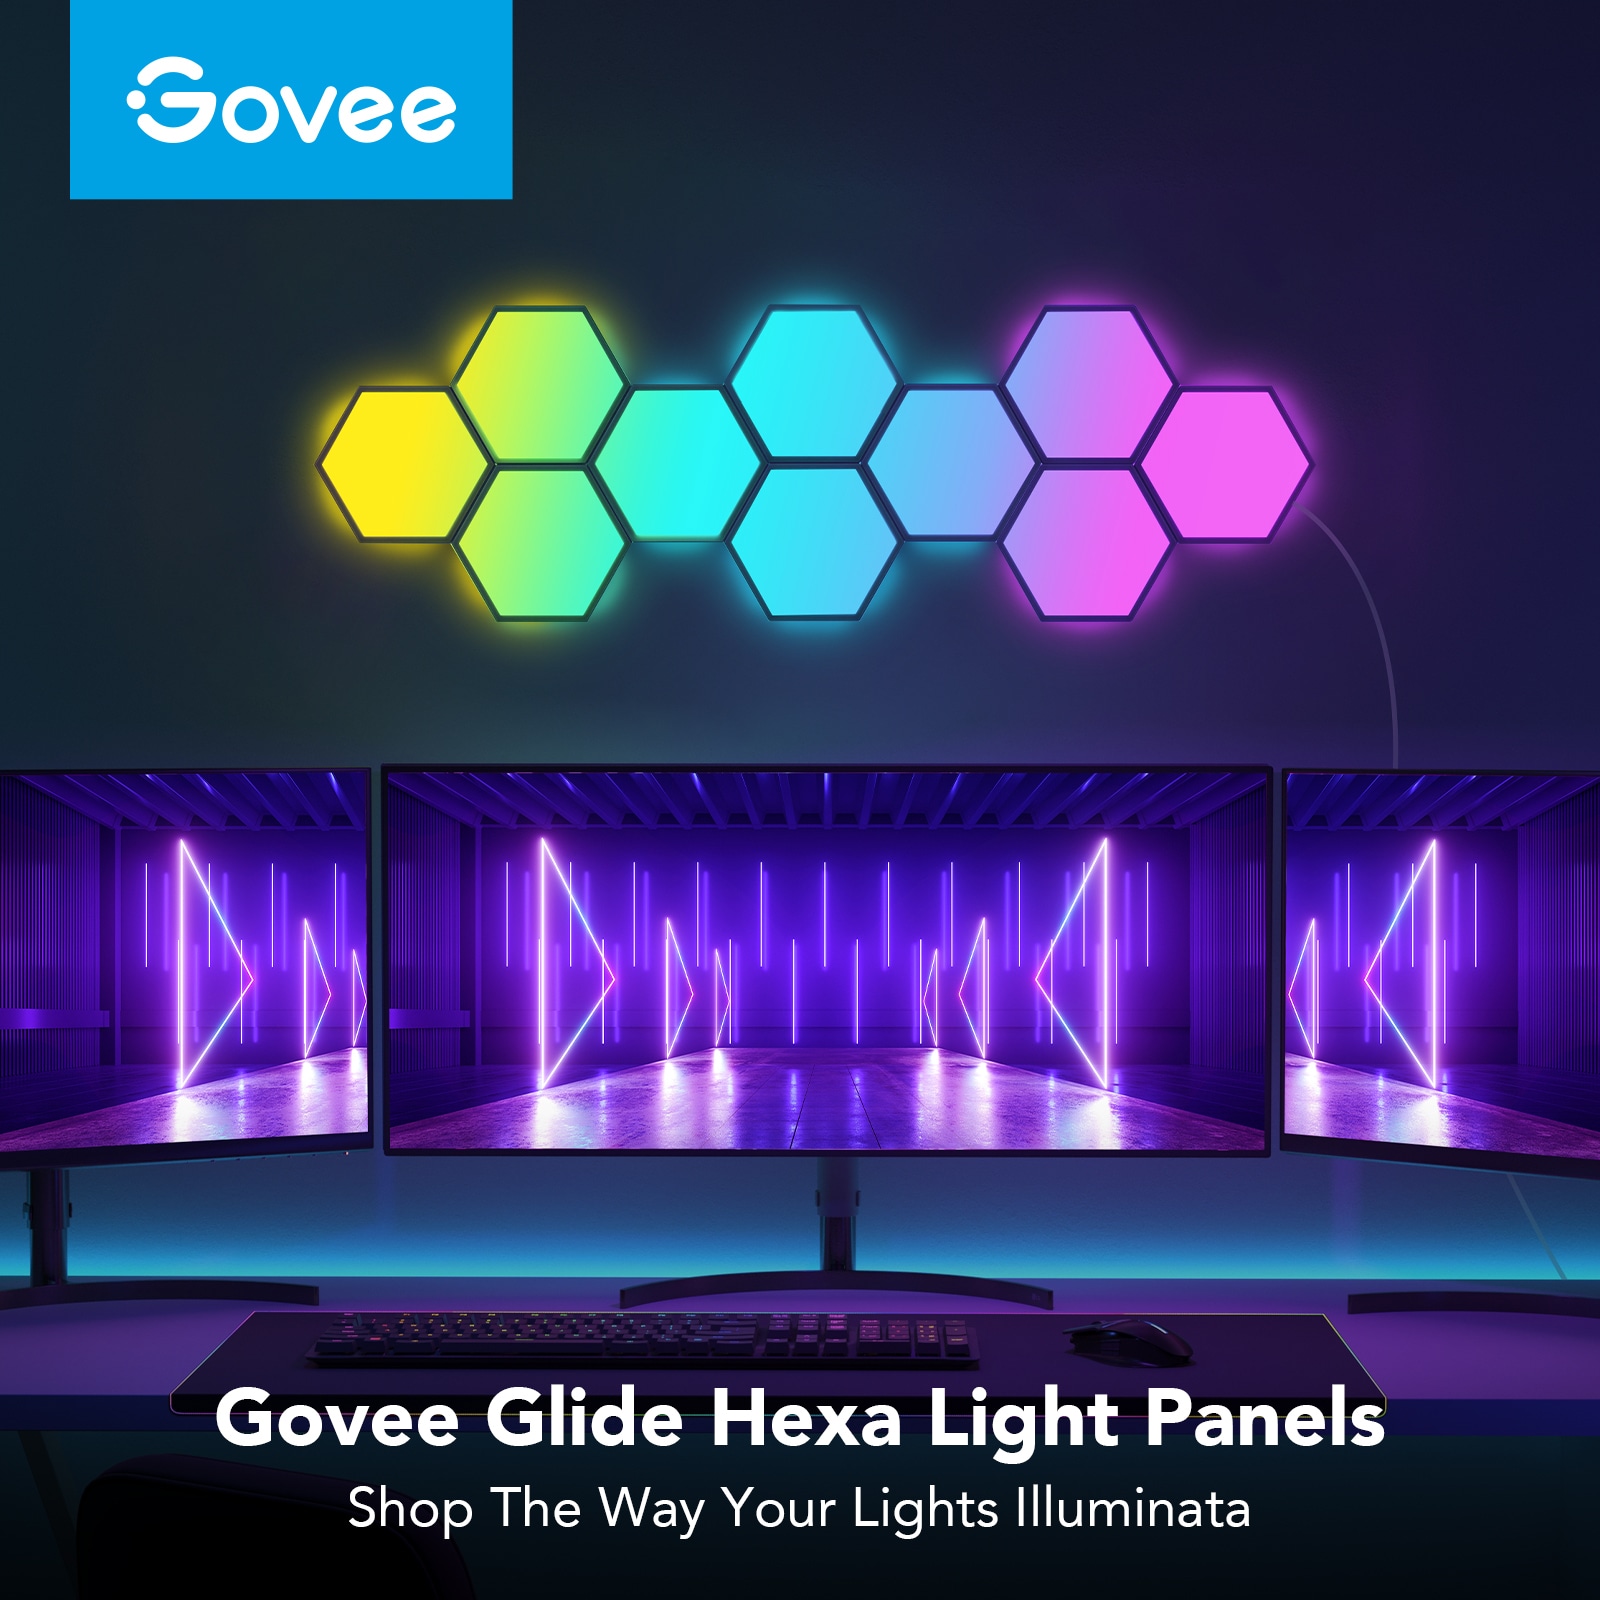 Govee Glide Hexa Pro LED Light Panels - Govee